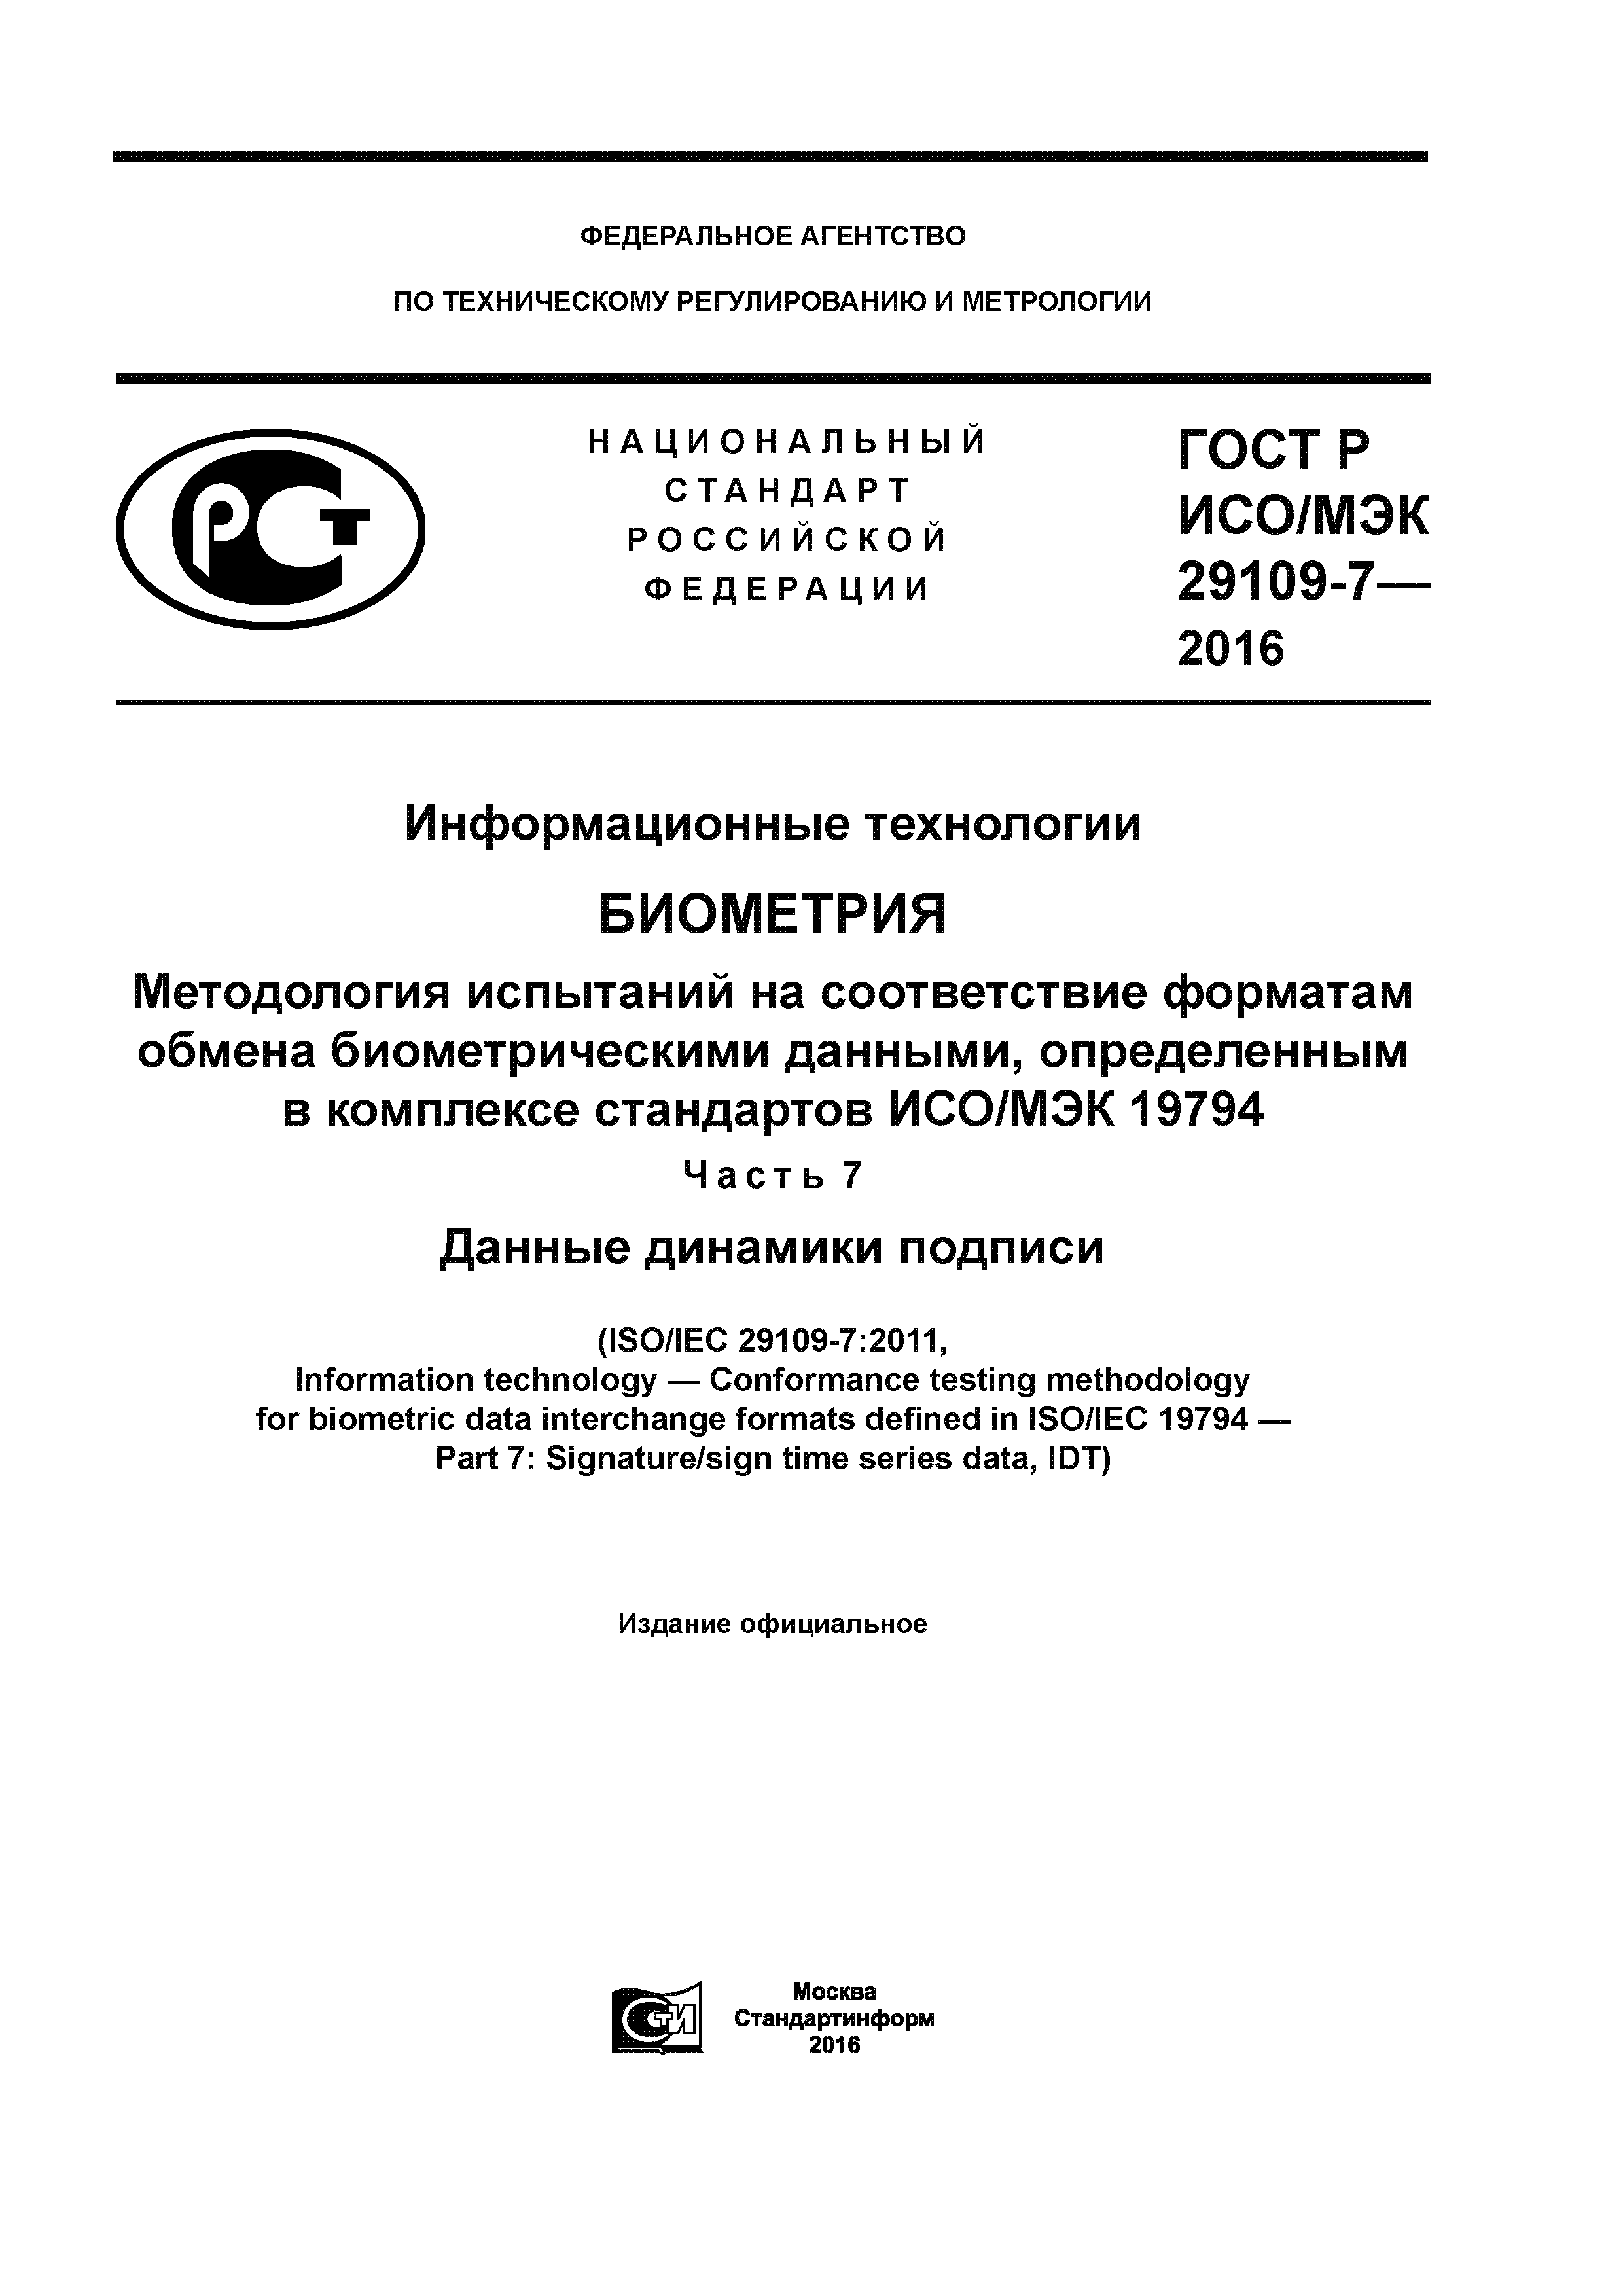 ГОСТ Р ИСО/МЭК 29109-7-2016